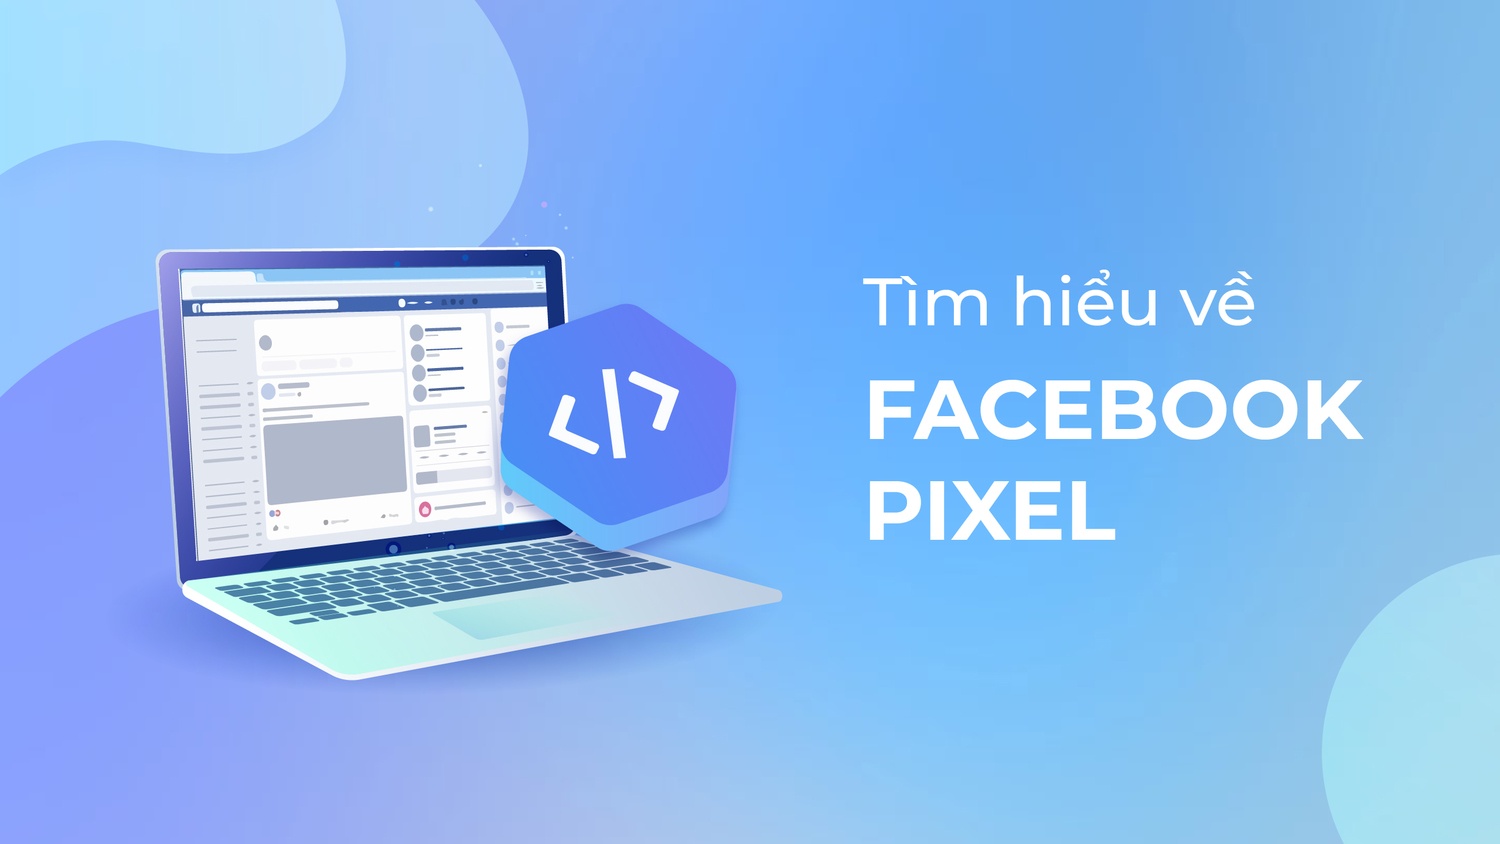 Facebook Pixel là gì?​ Điều bạn cần biết